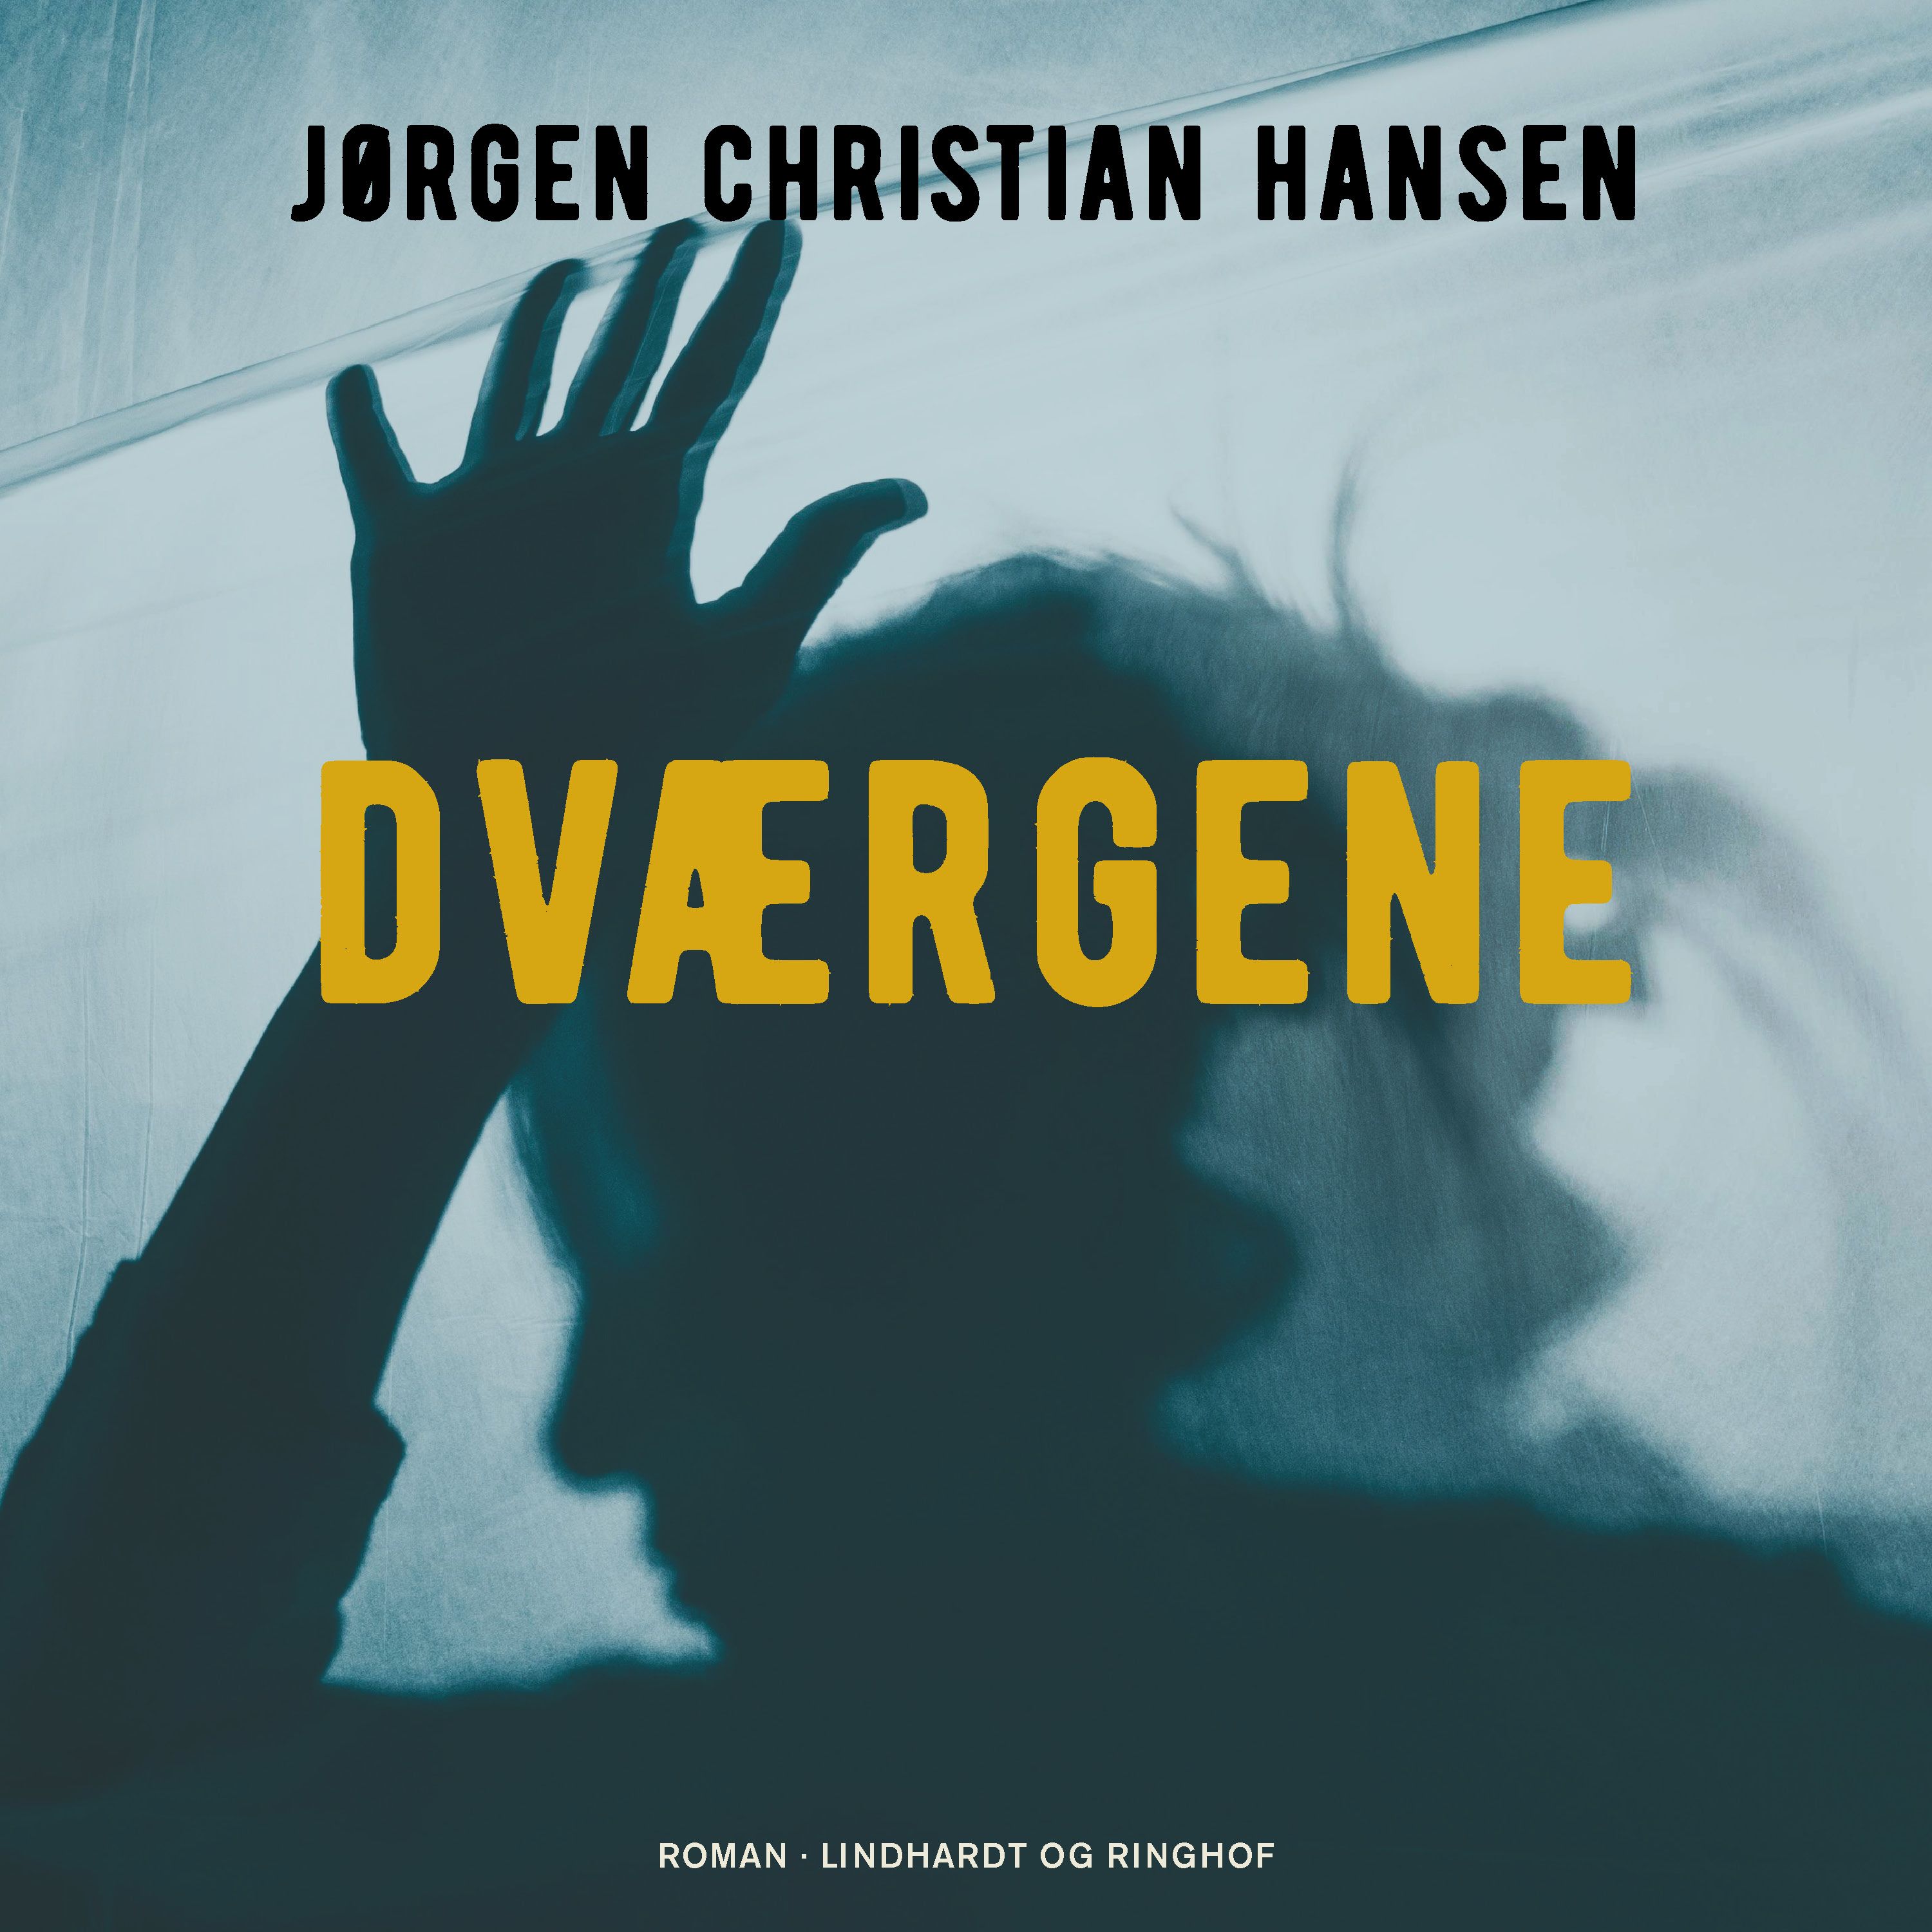 Dværgene, ljudbok av Jørgen Christian Hansen